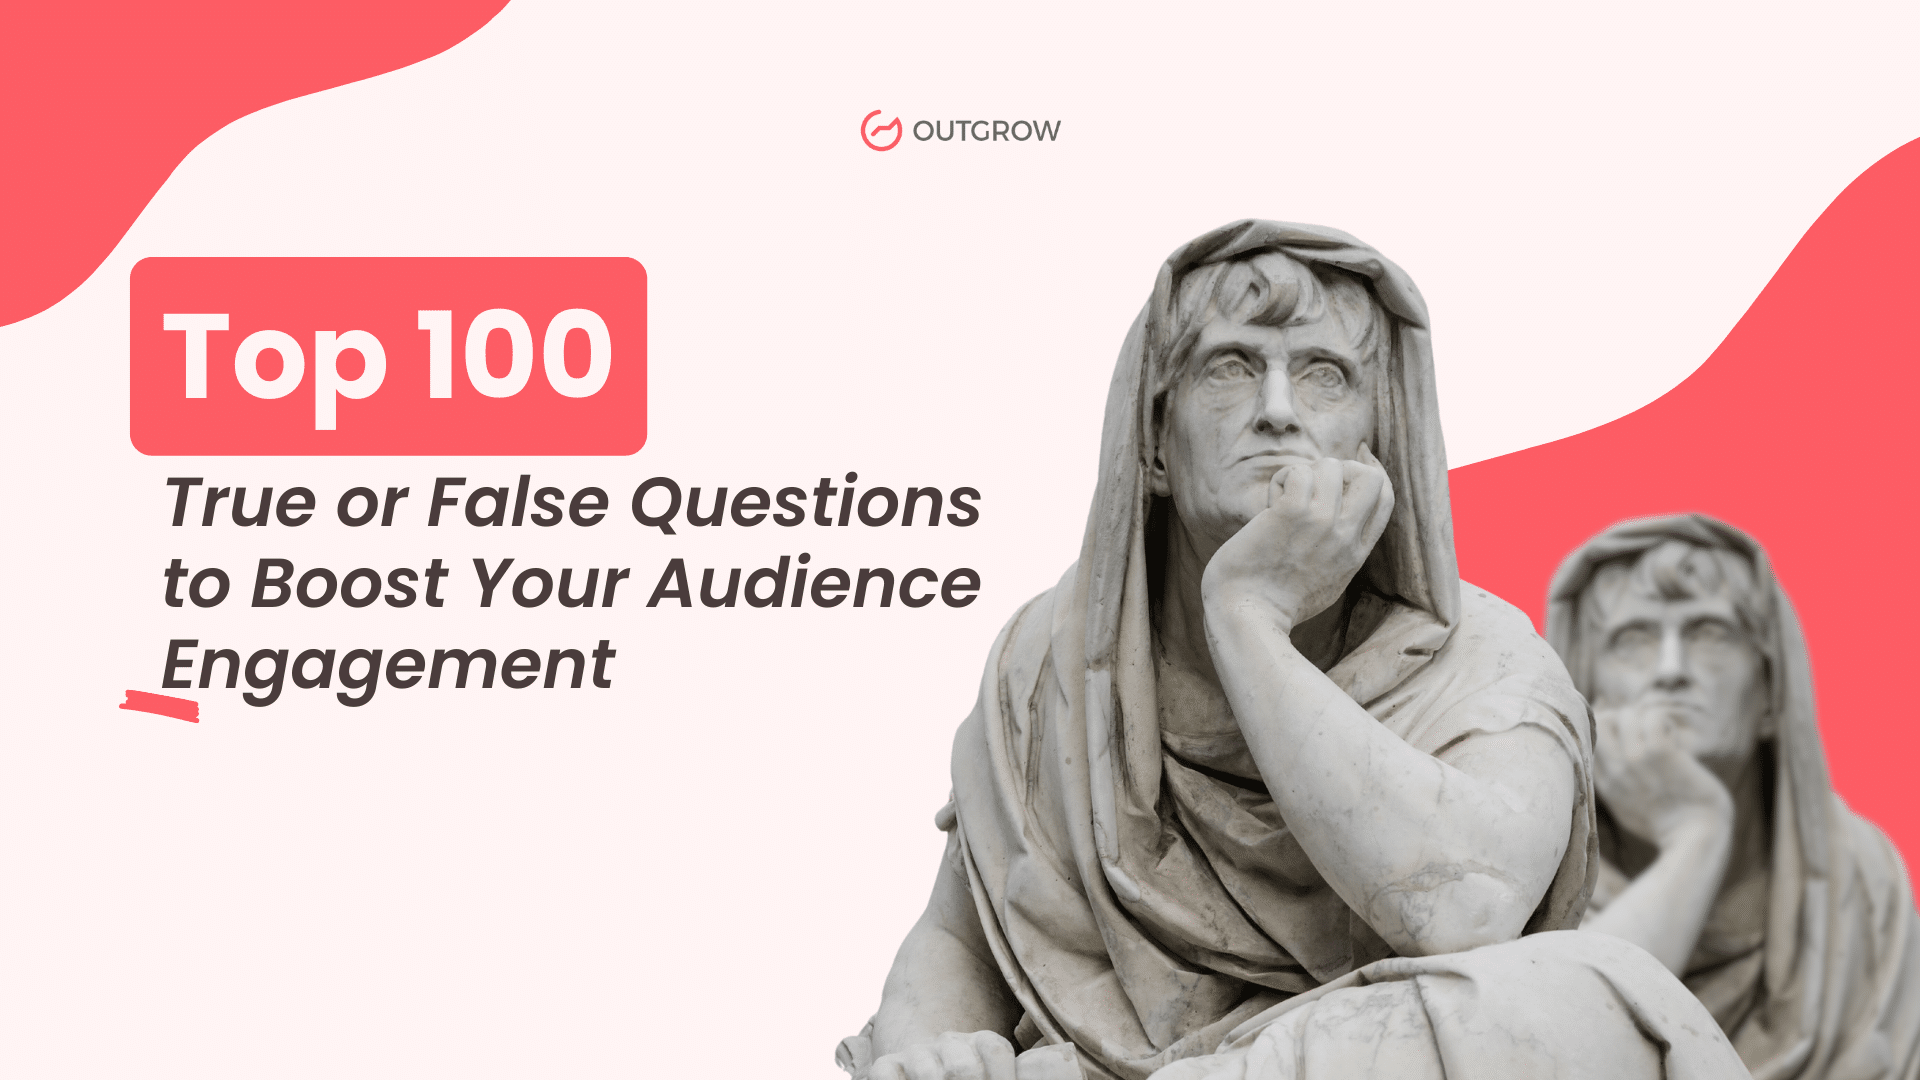 Top 100 True or False Questions